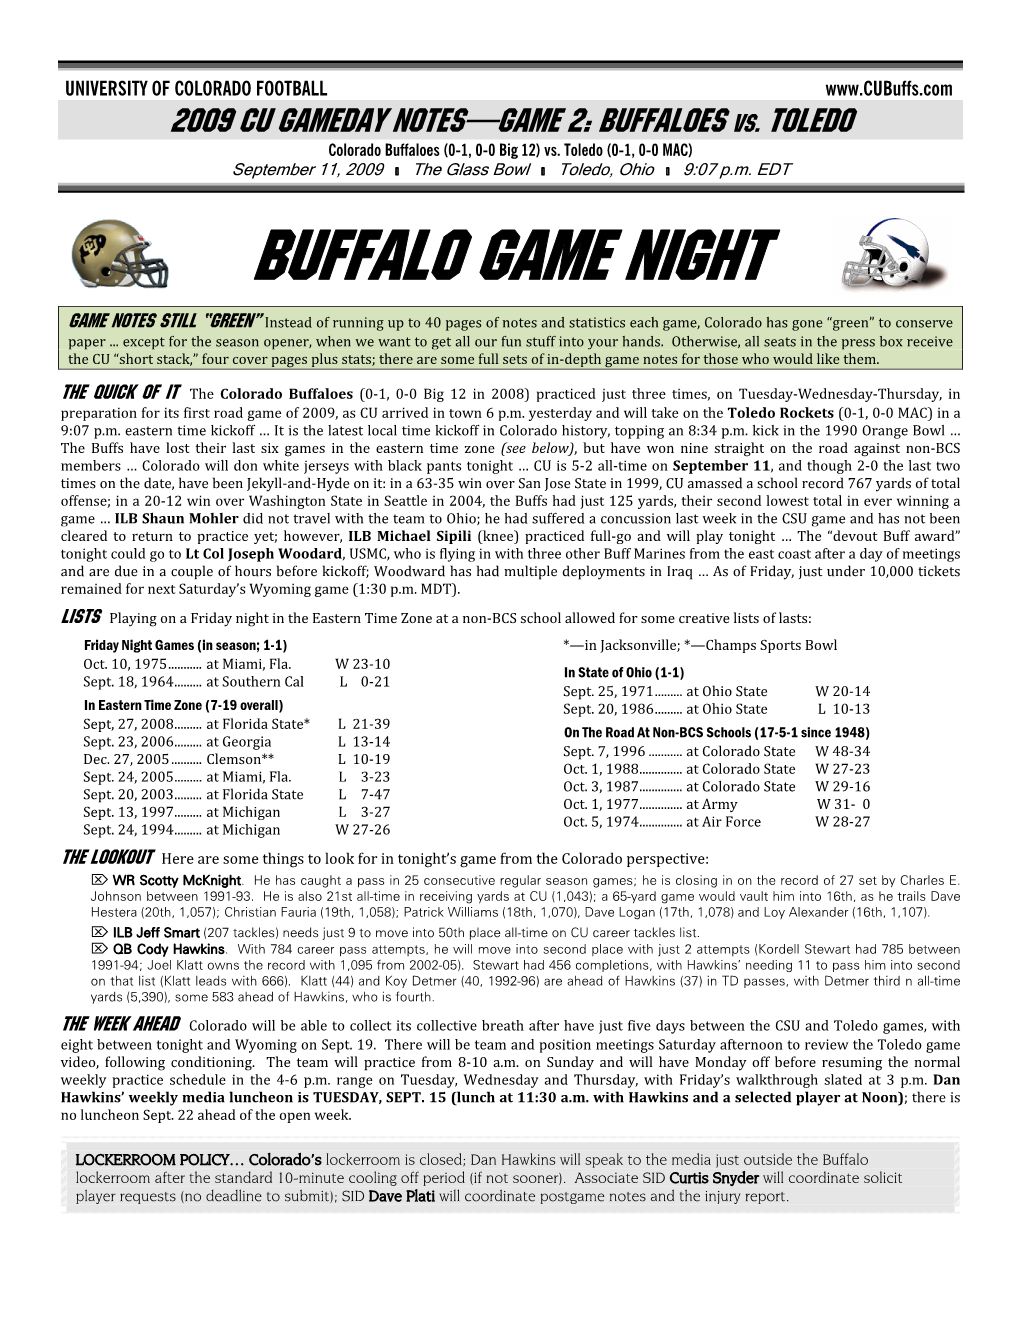 Buffalo Game NIGHT